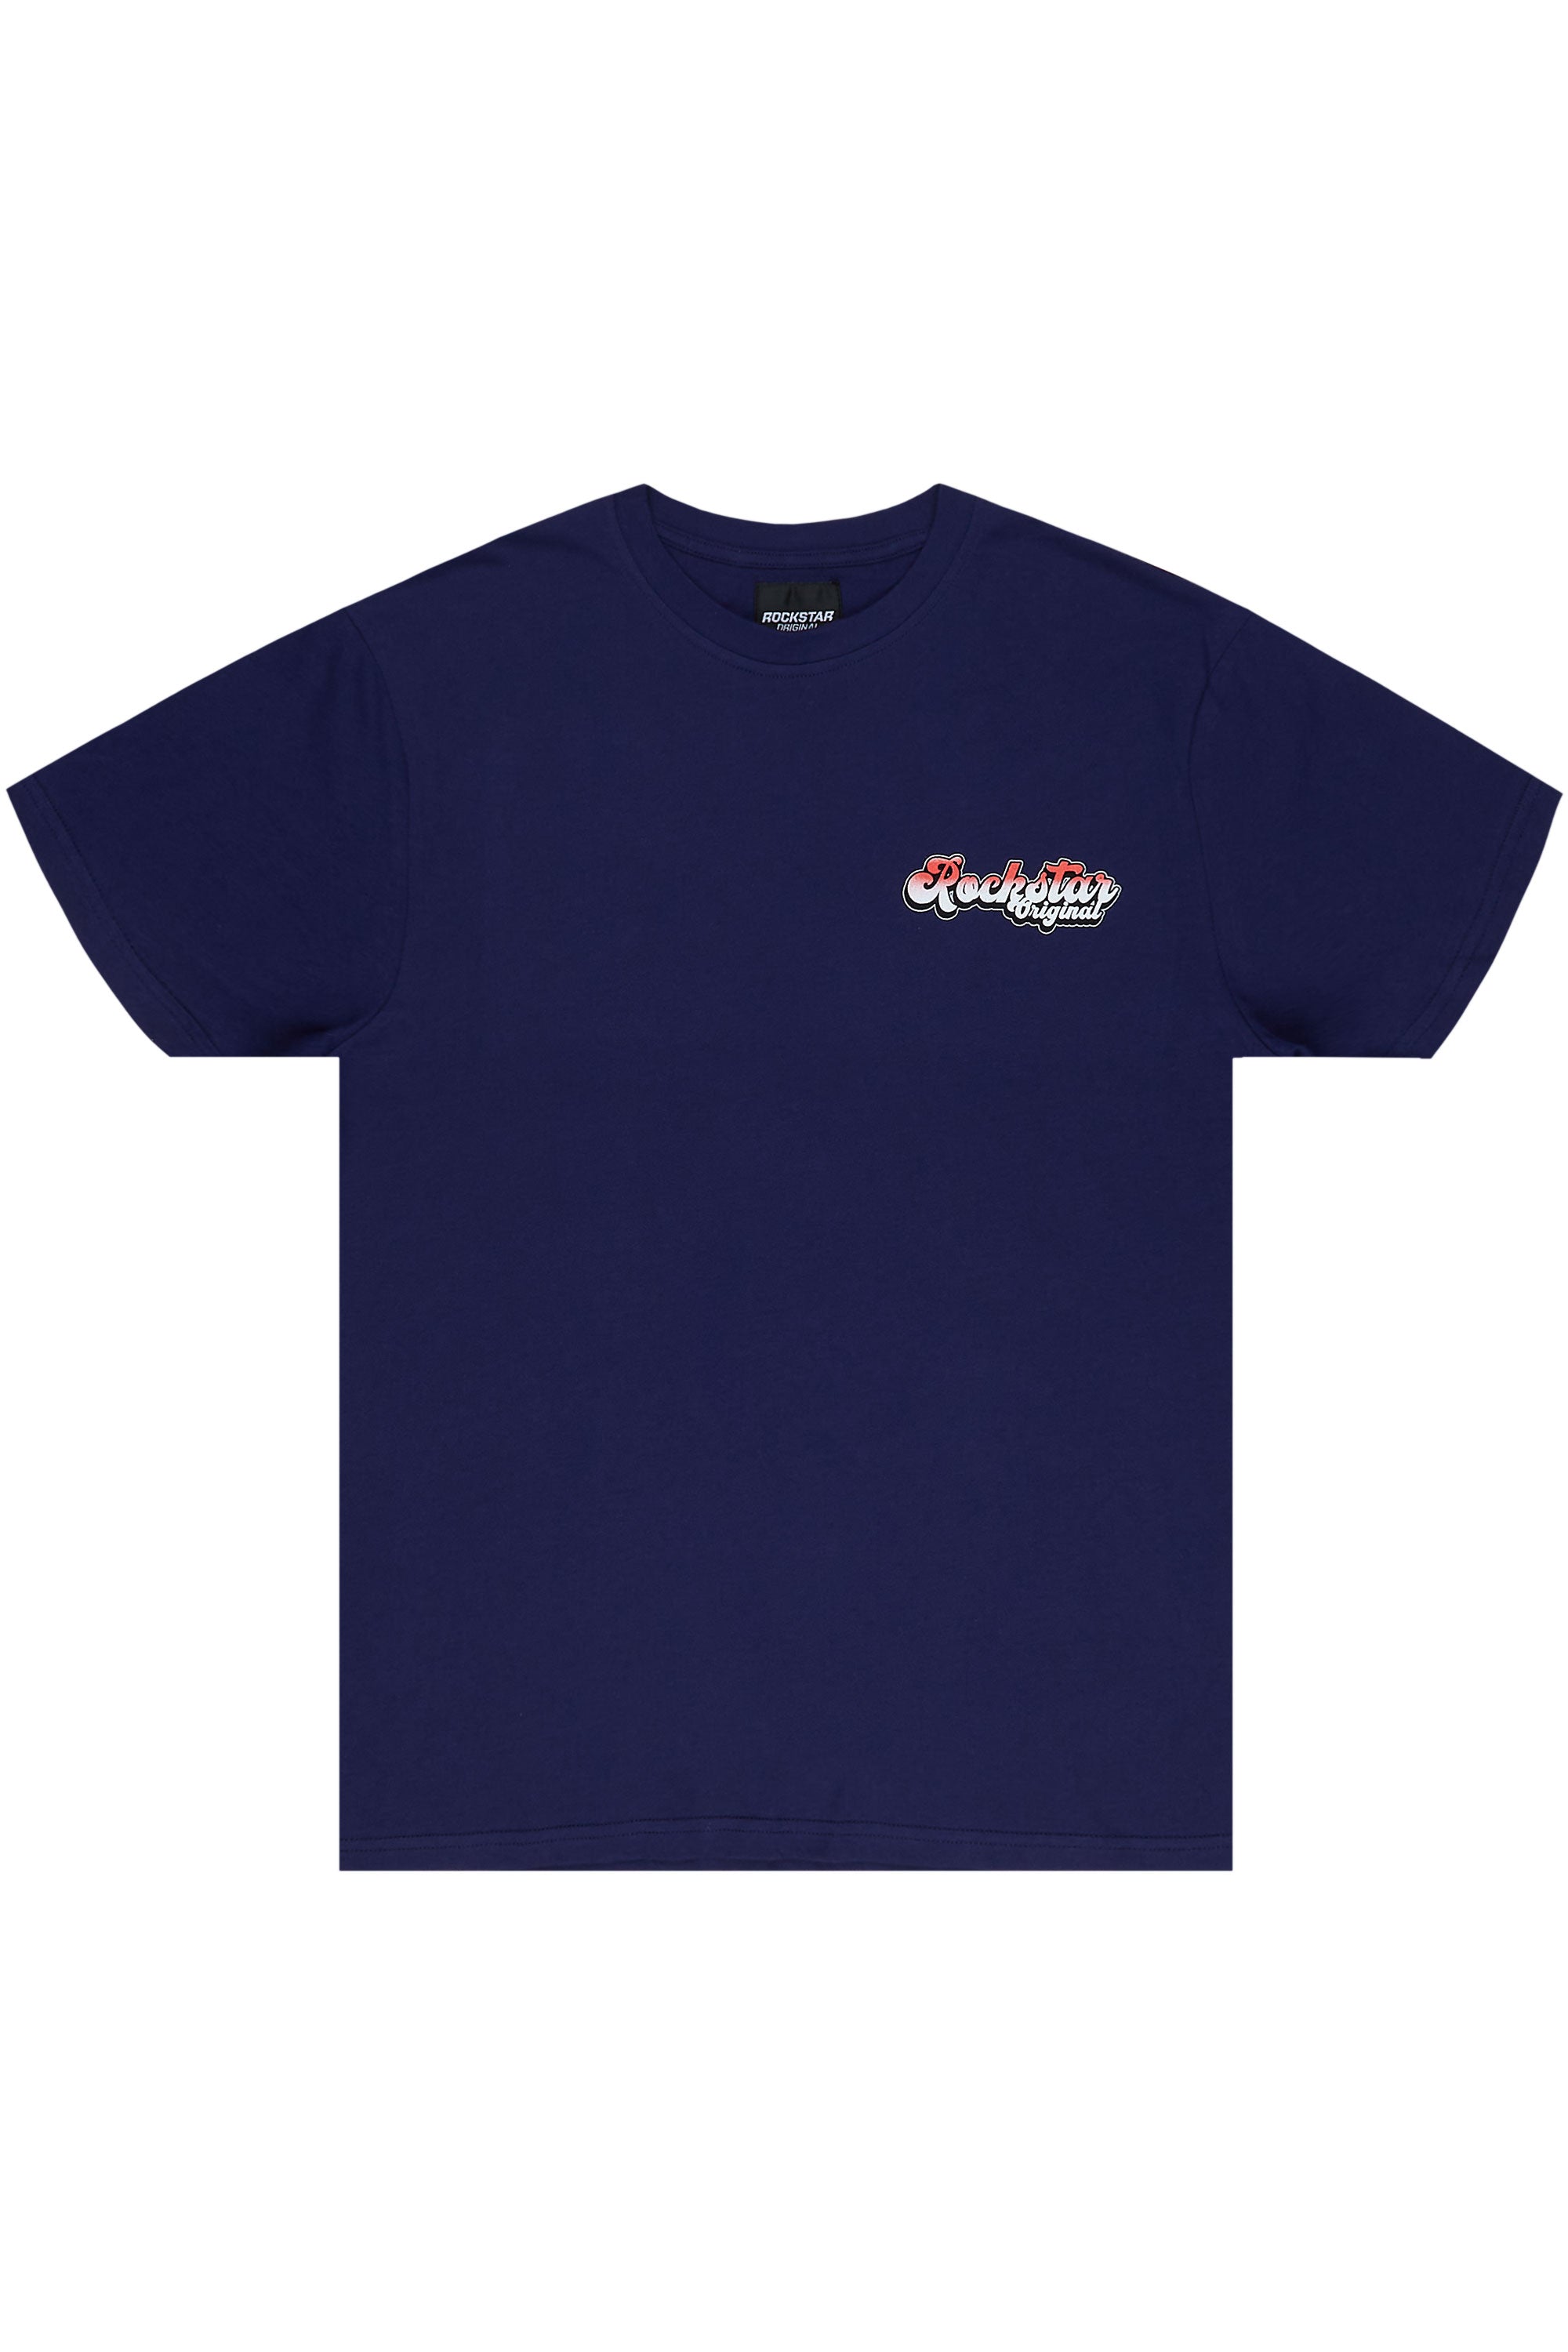 Highya Navy Graphic T-Shirt